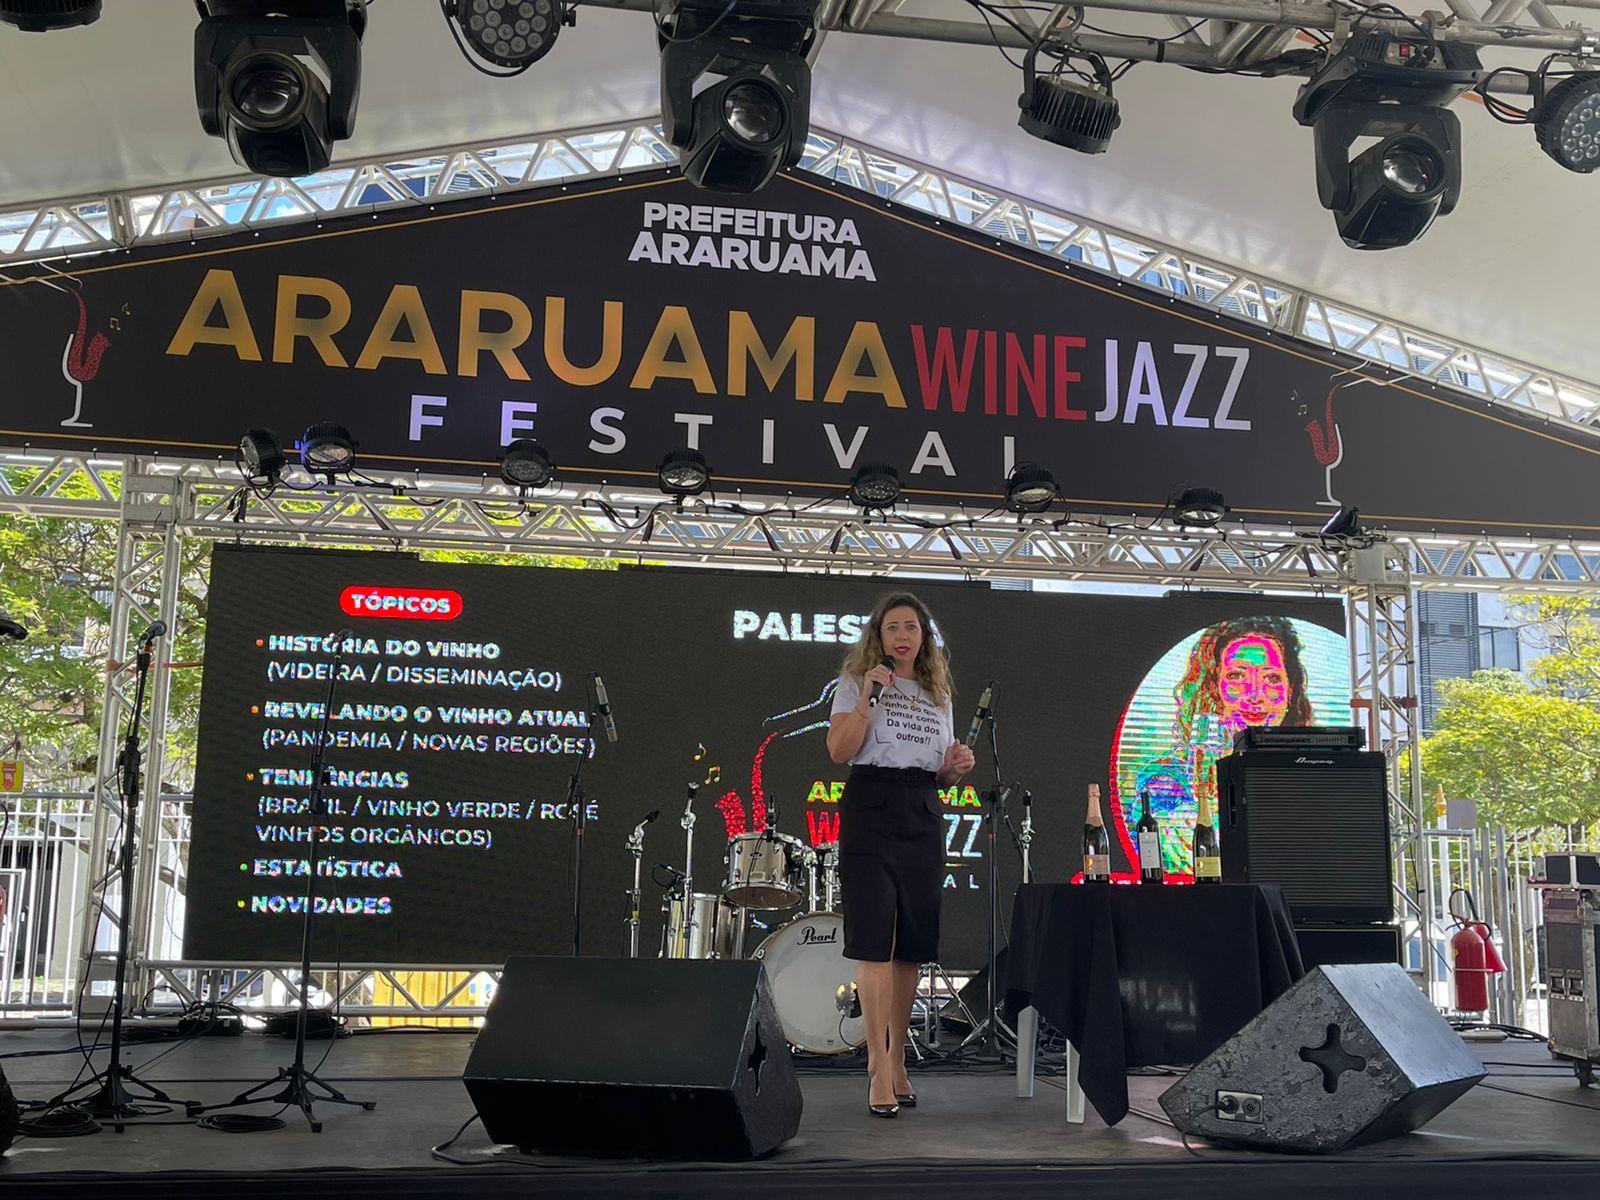 Palestras gratuitas sobre o mundo dos vinhos prometem fascinar o público  nesse sábado e domingo no “Araruama Wine Jazz Festival”